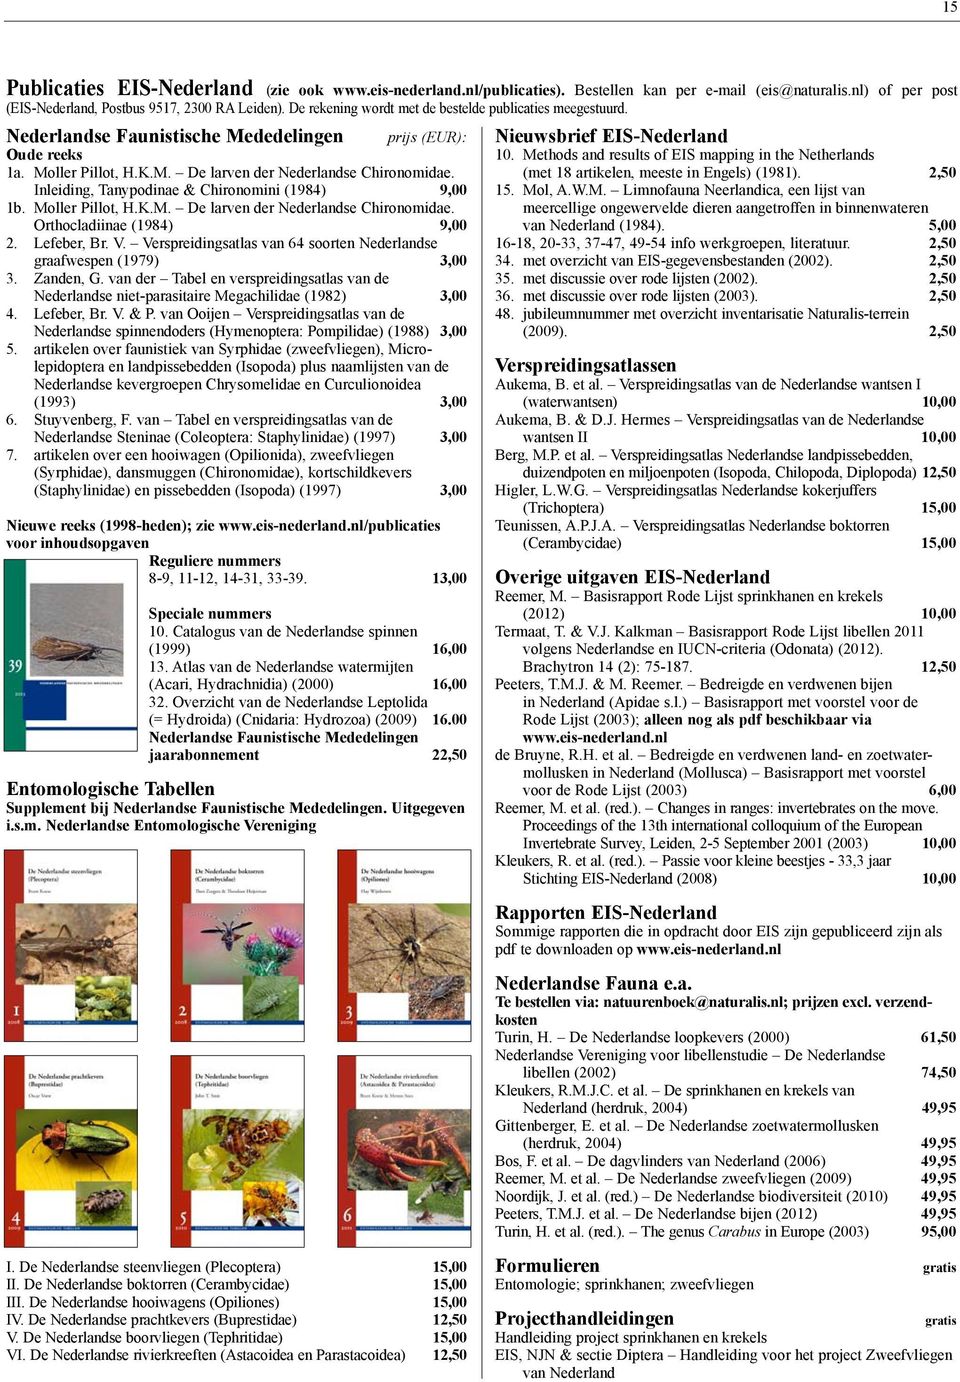 Inleiding, Tanypodinae & Chirono mini (1984) 9,00 1b. Moller Pillot, H.K.M. De larven der Nederlandse Chironomidae. Ortho cladiinae (1984) 9,00 2. Lefeber, Br. V.